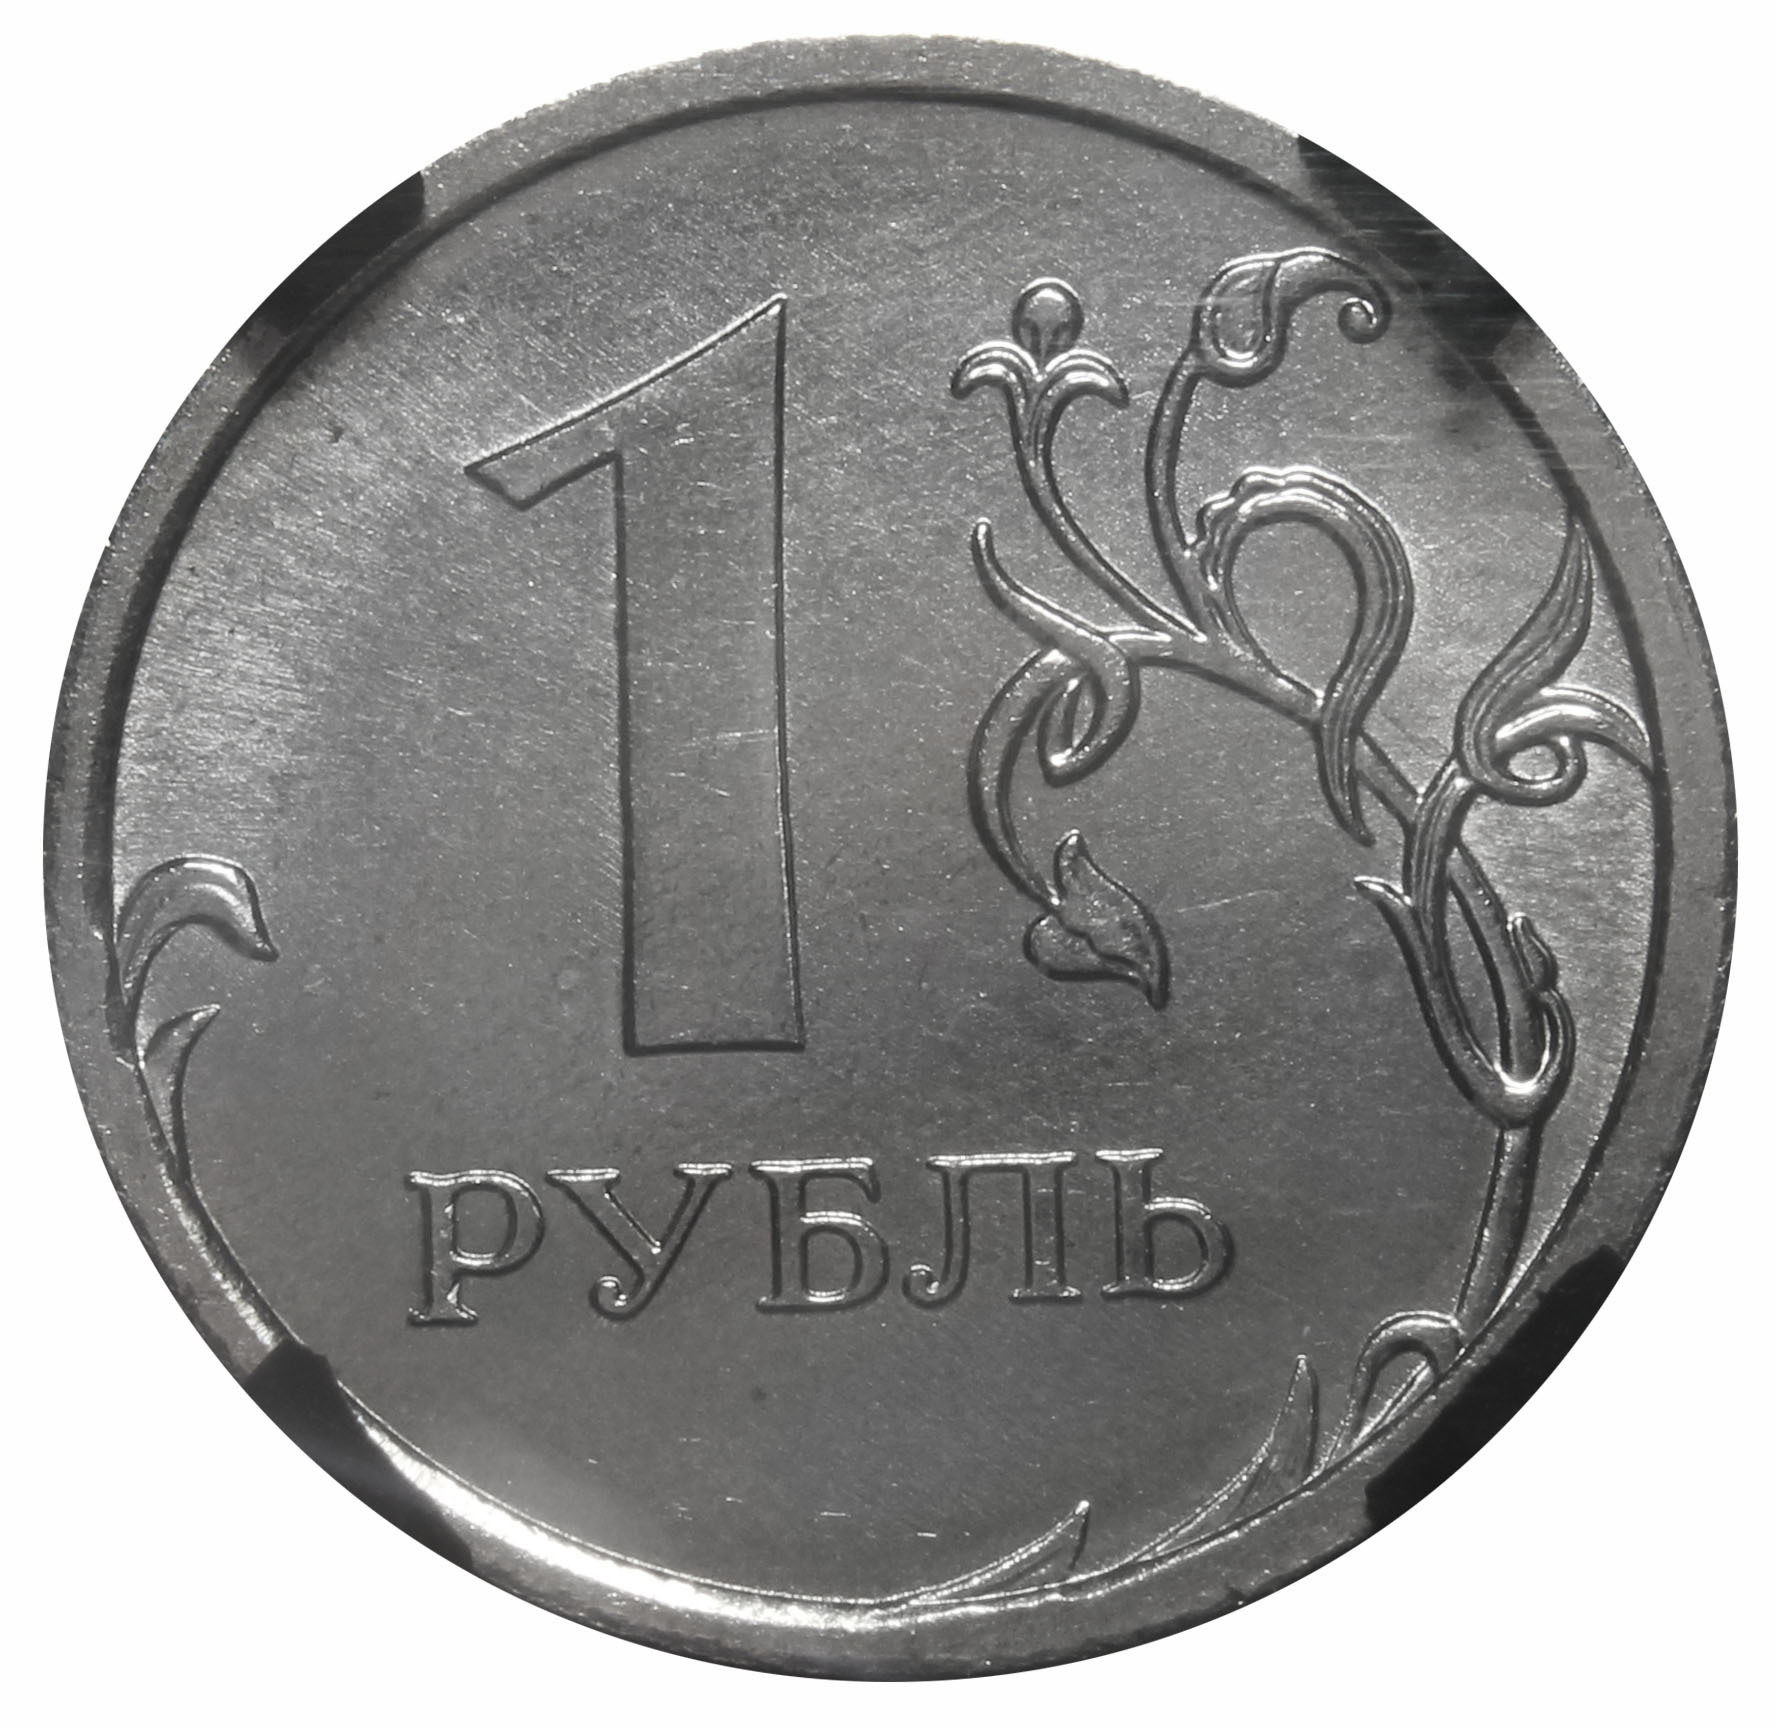 1 руб 2024 года. 1 Рубль. Монеты рубли. Монета 1 руб. Изображение монеты 1 рубль.